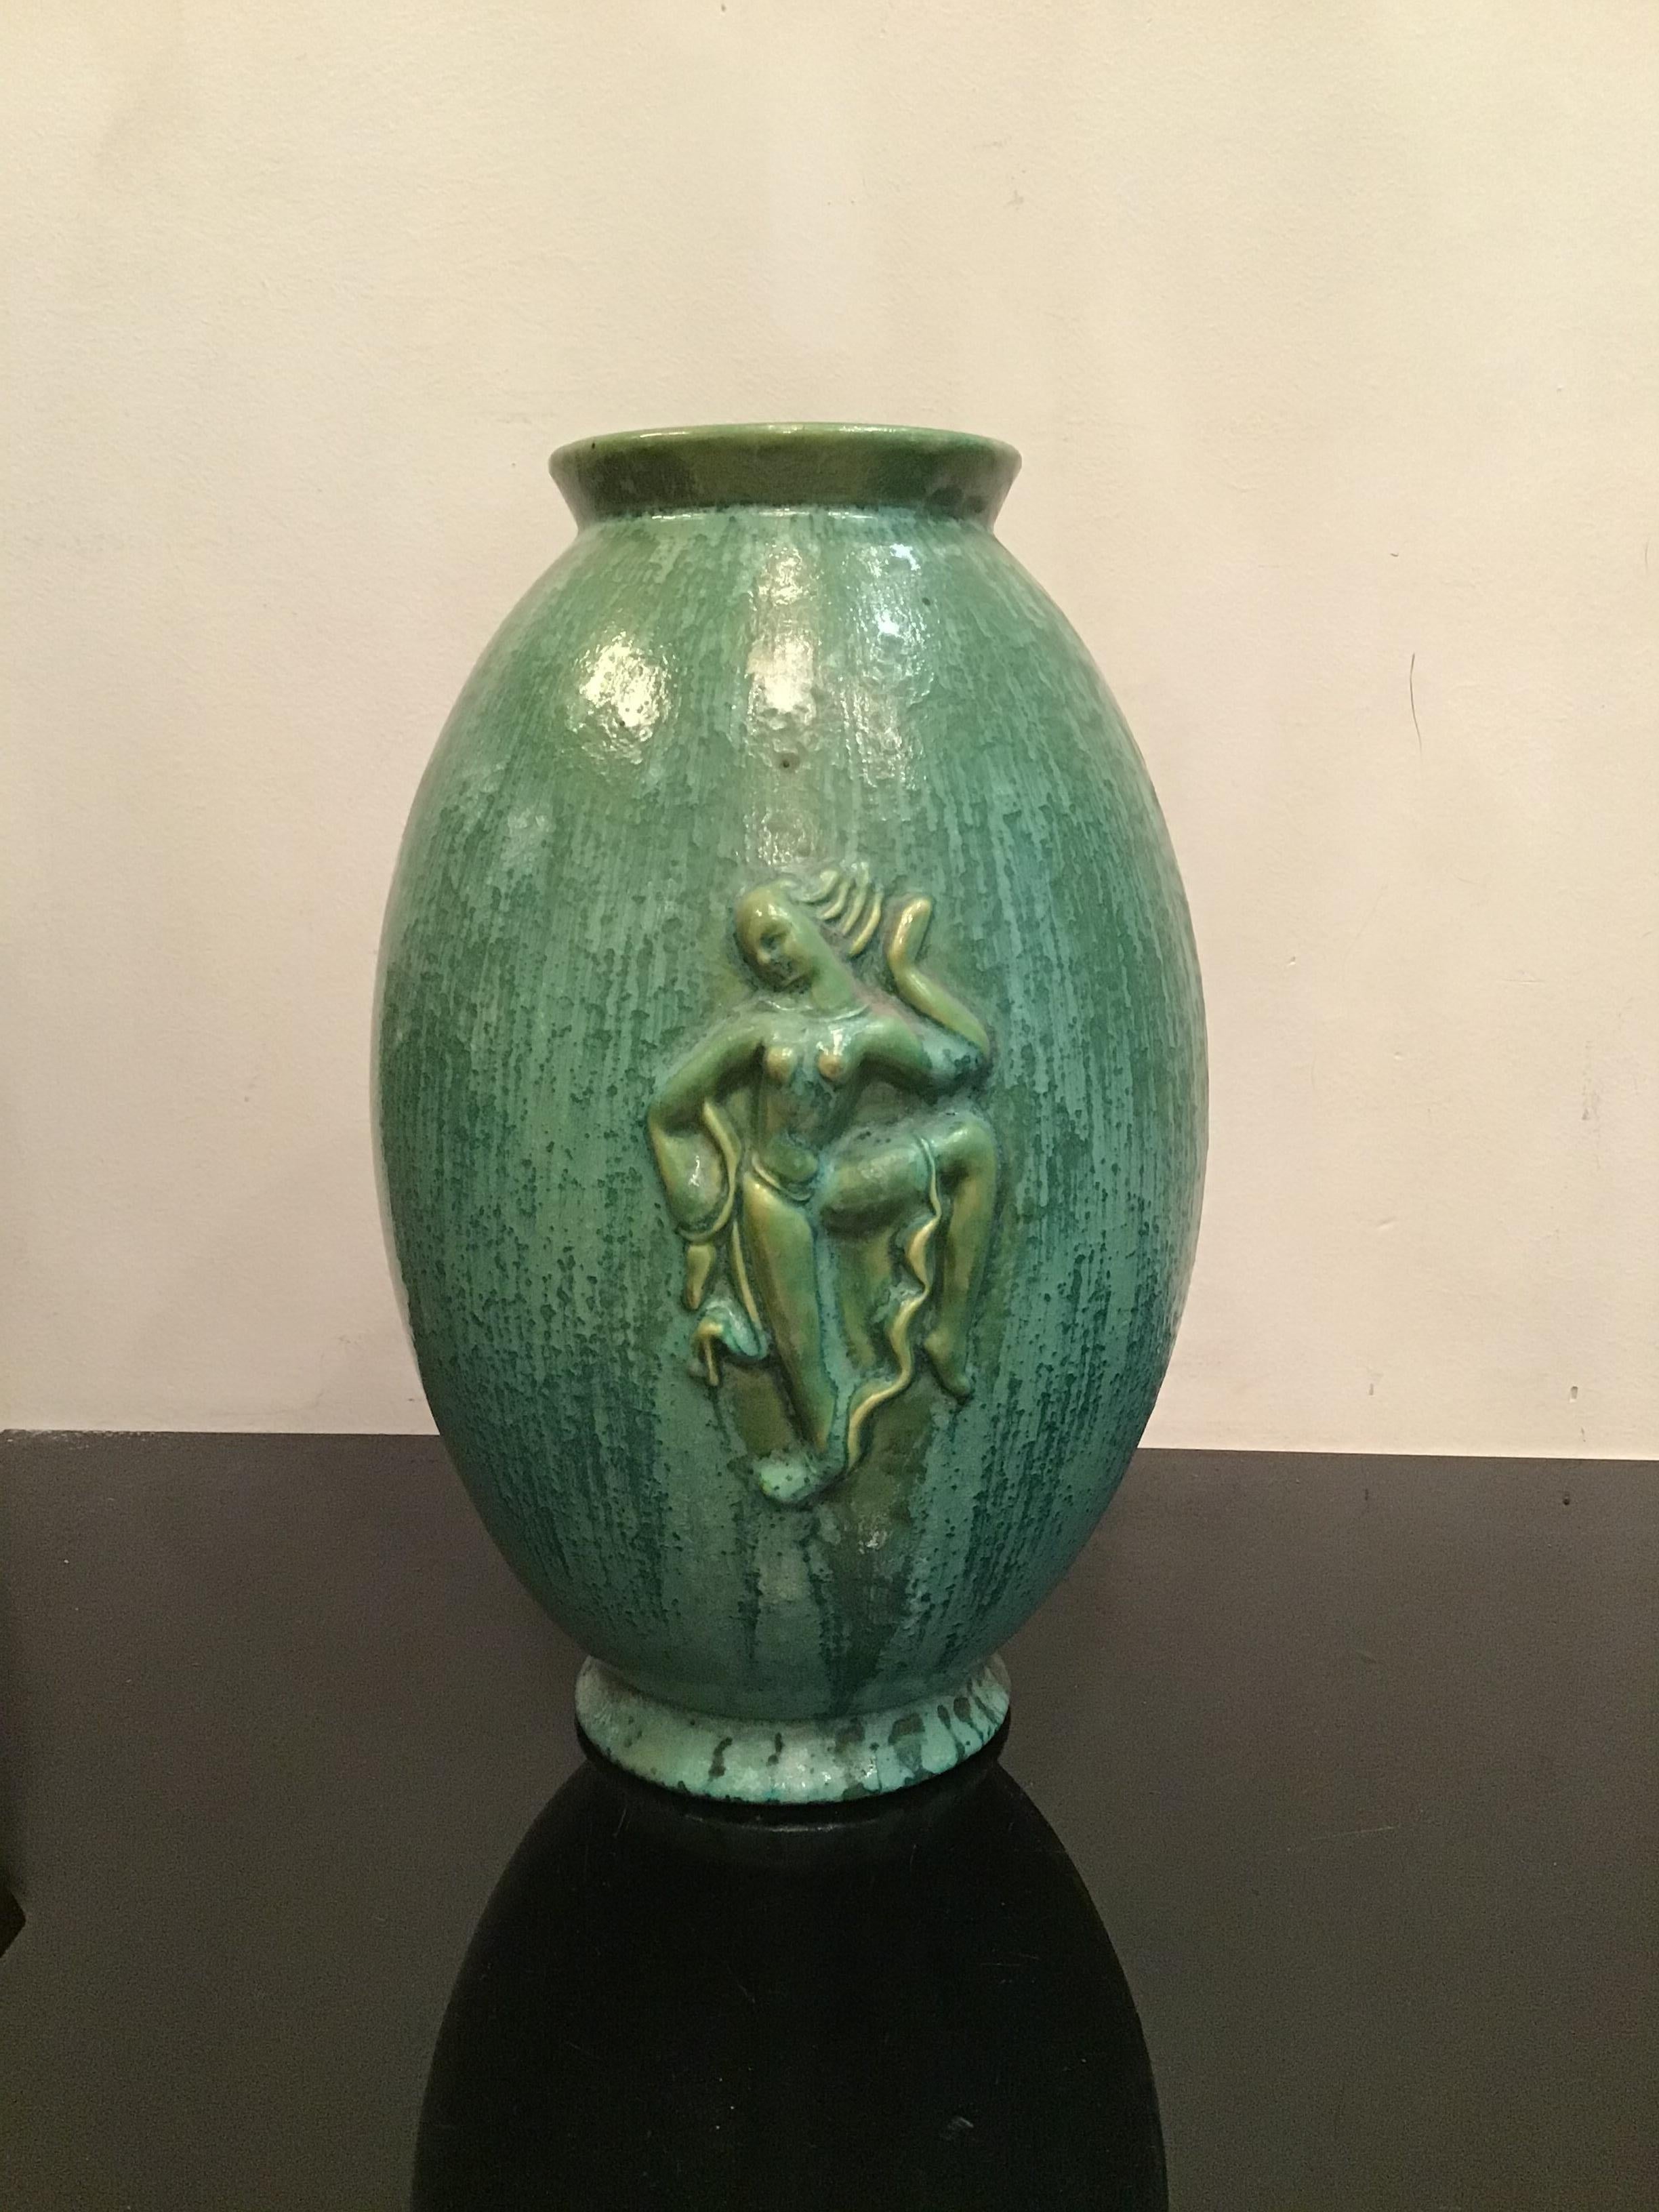 Lavenia Angelo Biancini Vase aus Maiolica, 1930, Italien.